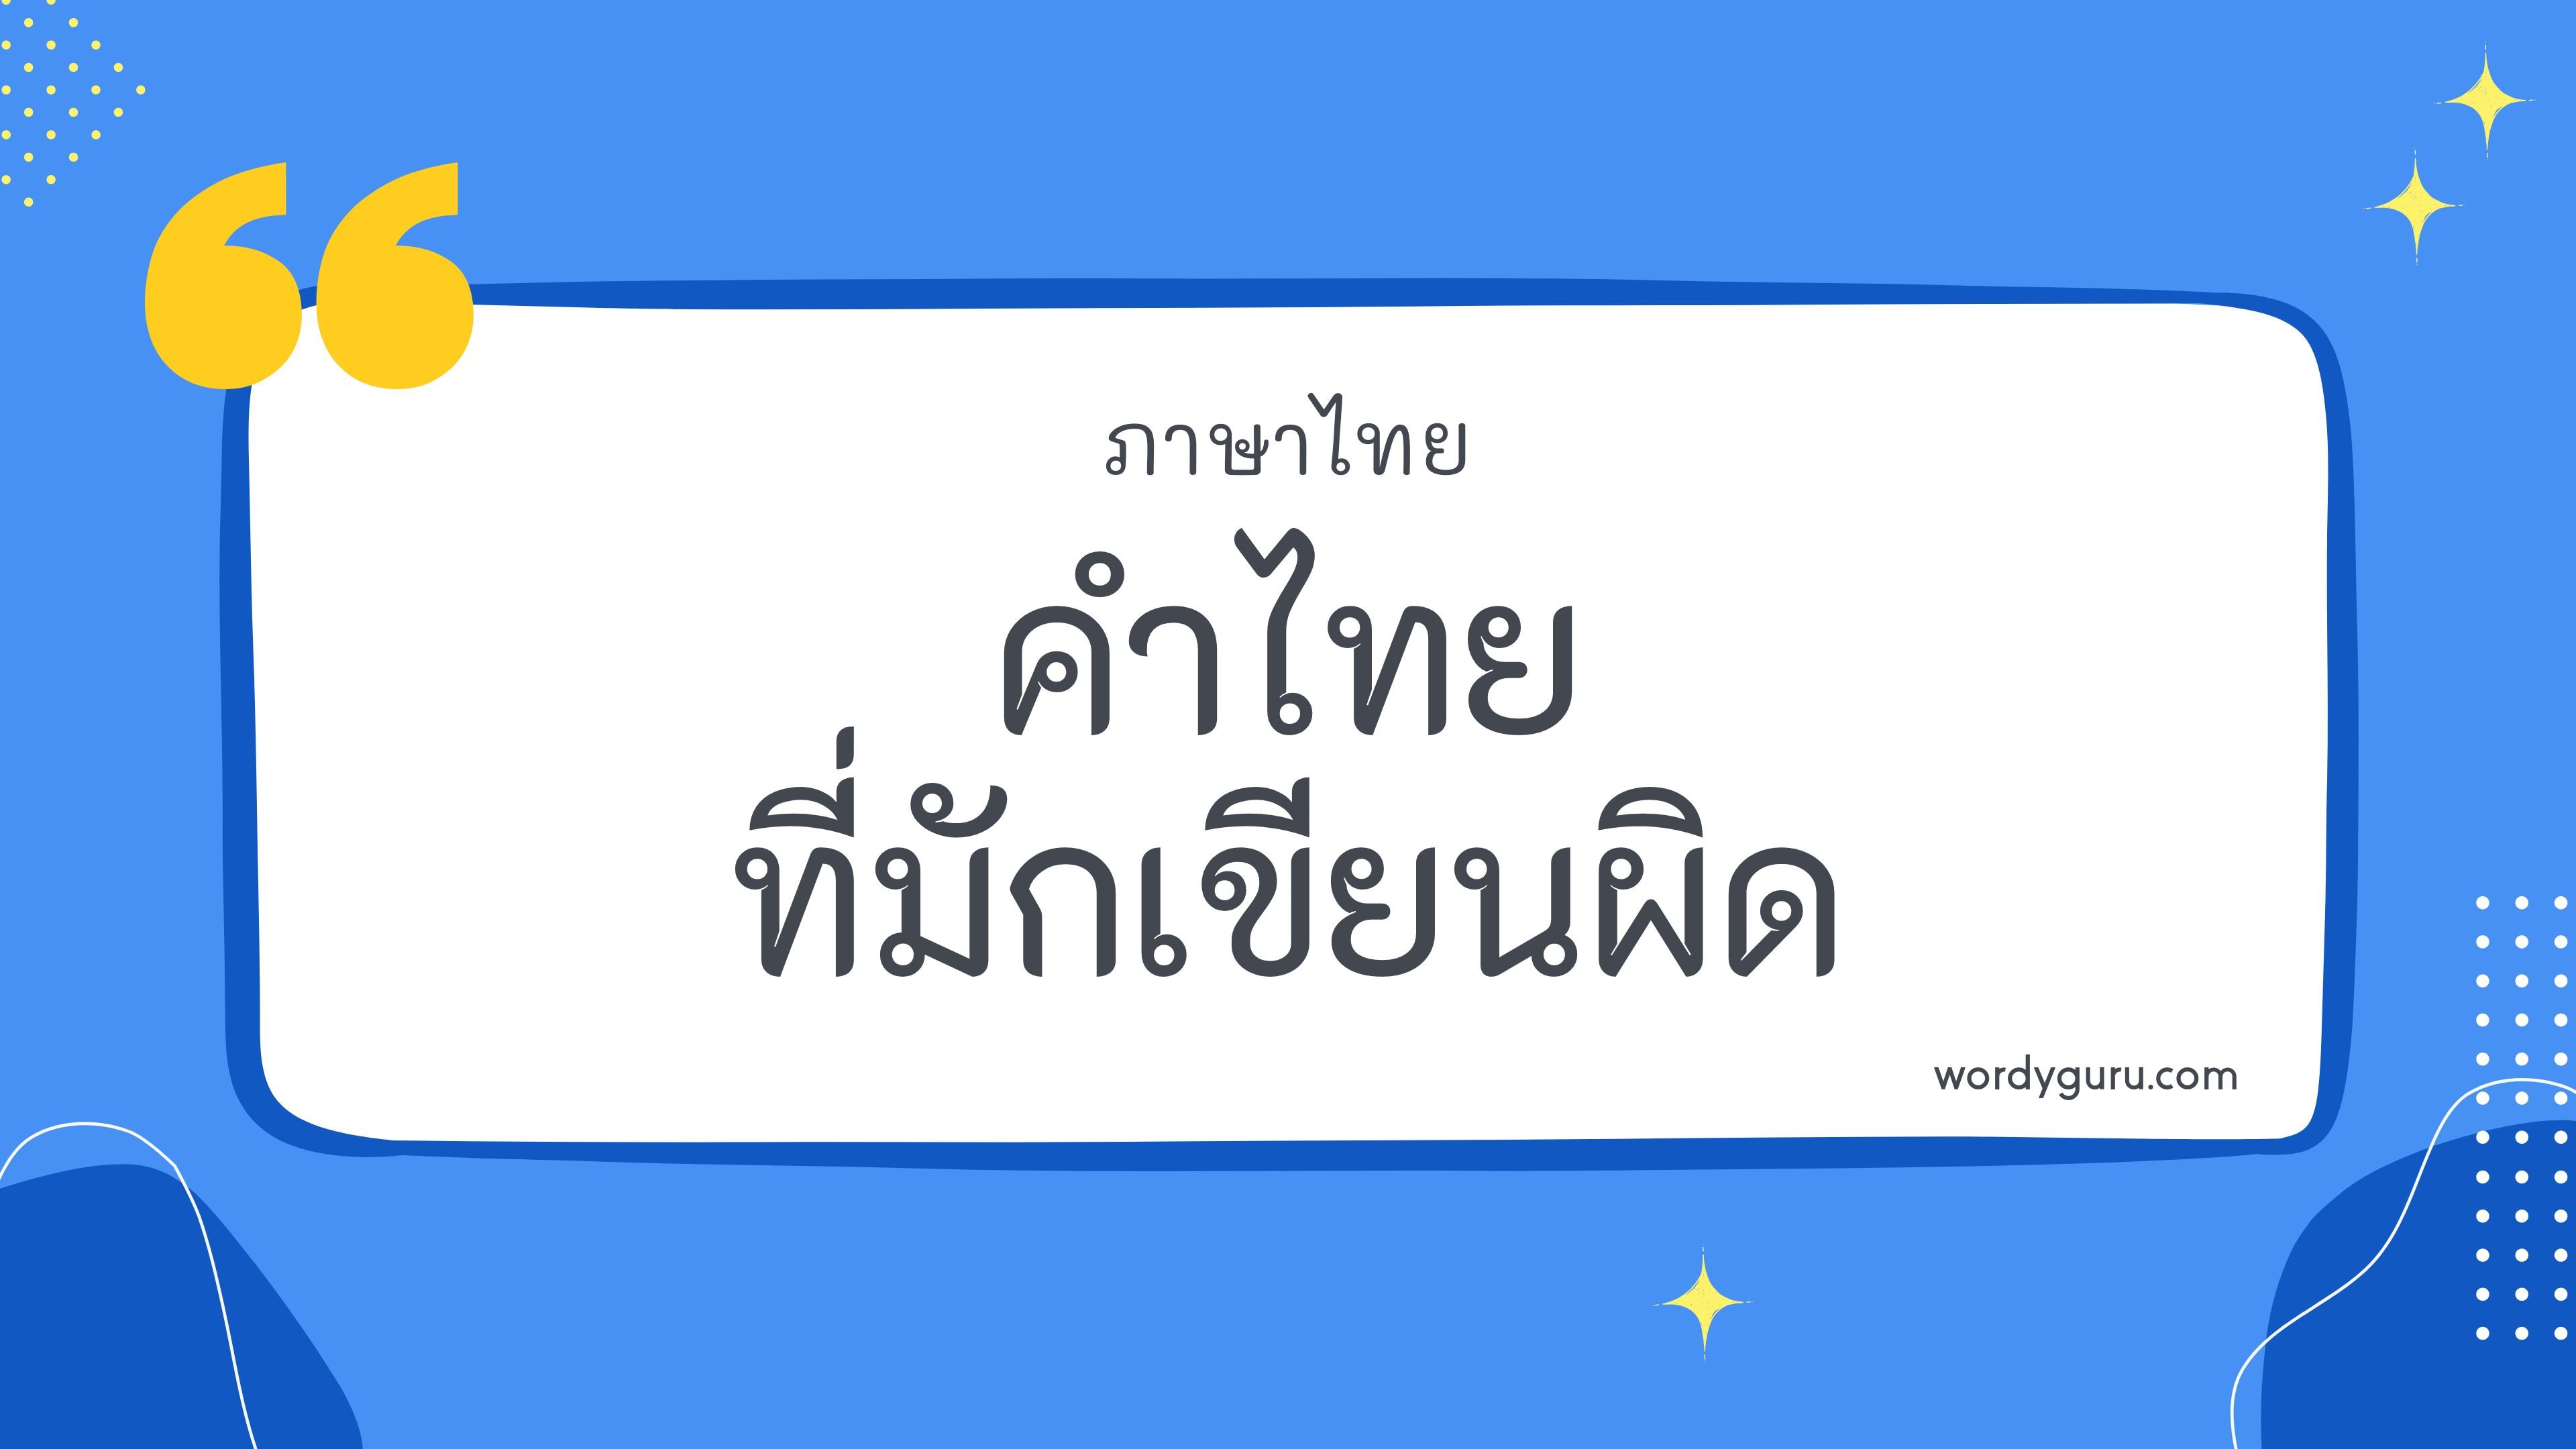 คำไทยที่มักเขียนผิด หมวด ฎ ตามที่เคยรู้จัก คำในภาษาไทยที่มักเขียนผิด มีอยู่หลายคำ จะมีคำไหนที่เรารู้จักไหมนะ